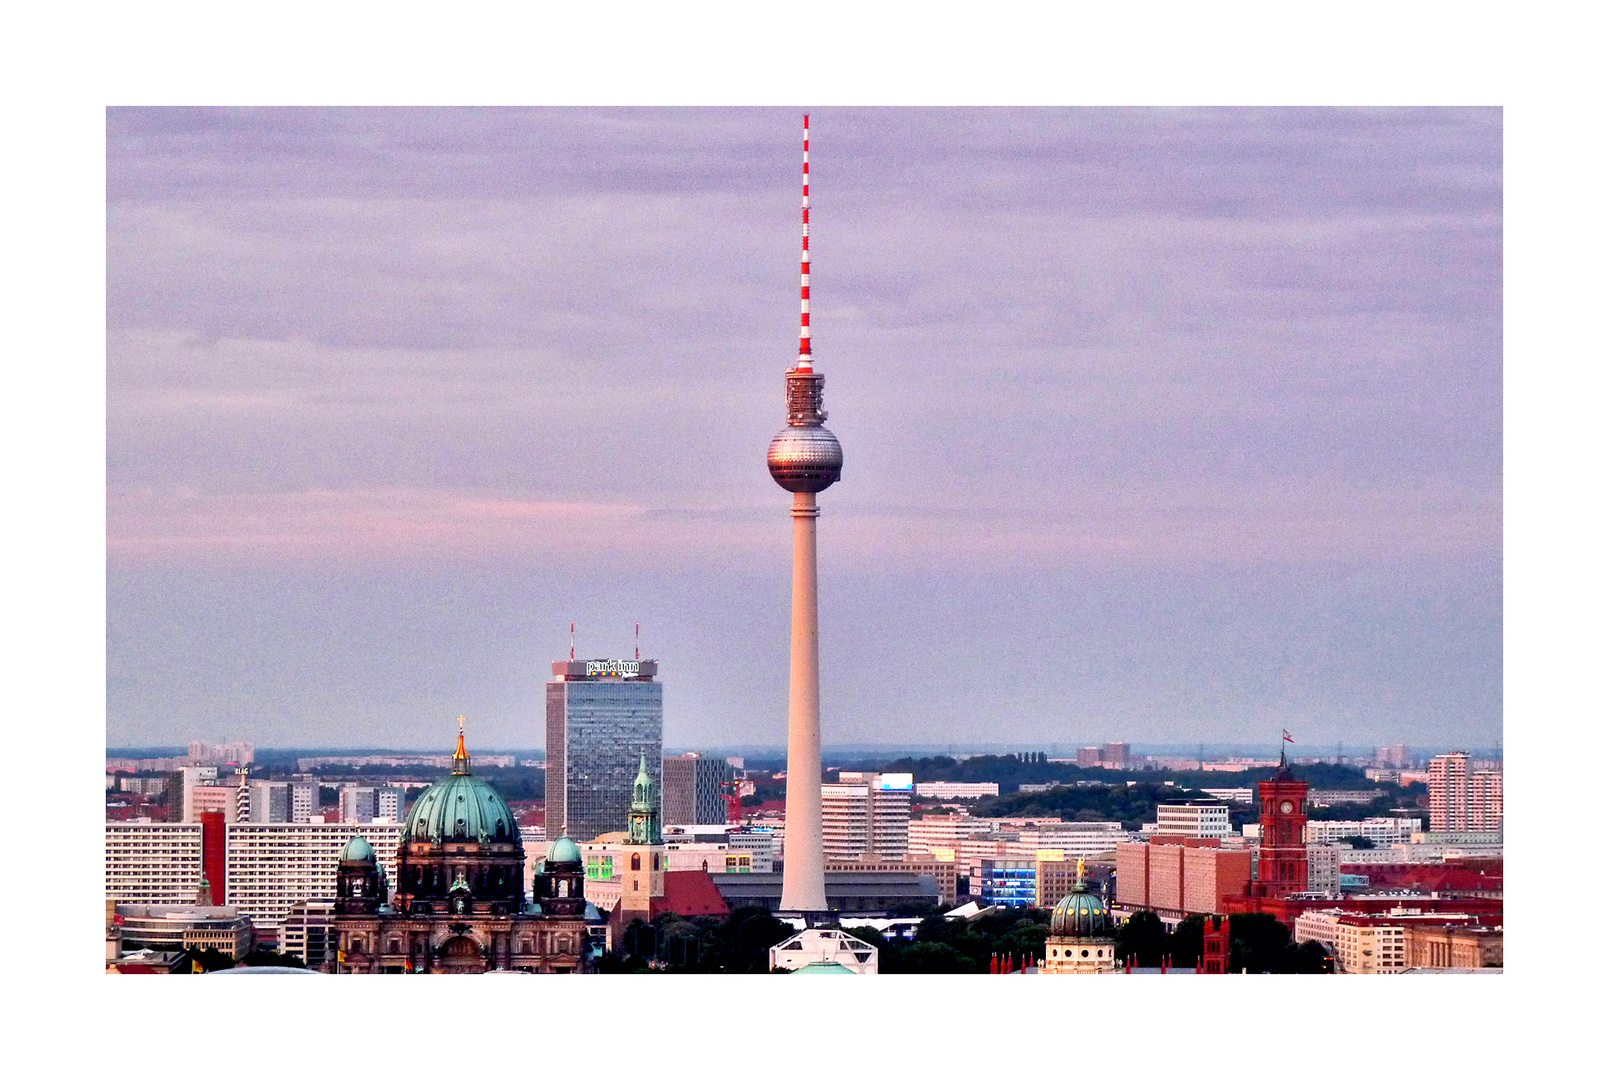 Ich fühl'es selten, aber hier - sach ich: "Berlin, ikk liebe Dir!"